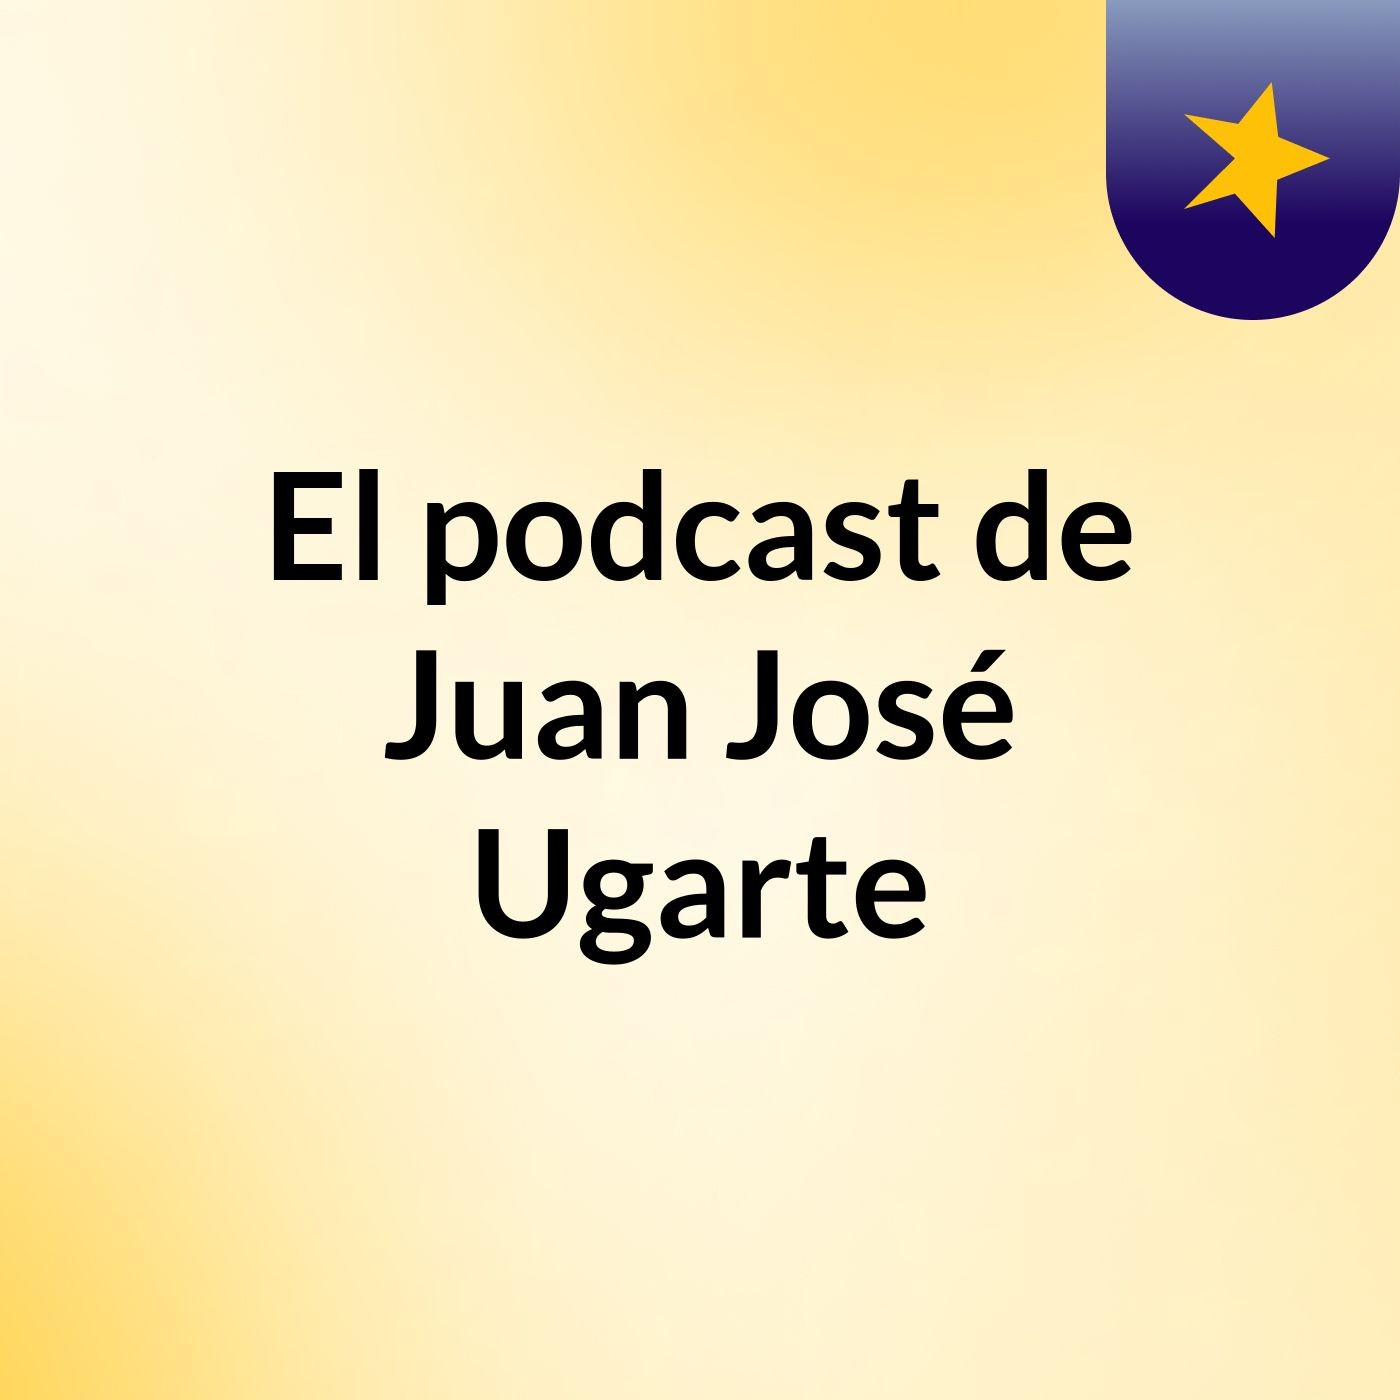 El podcast de Juan José Ugarte